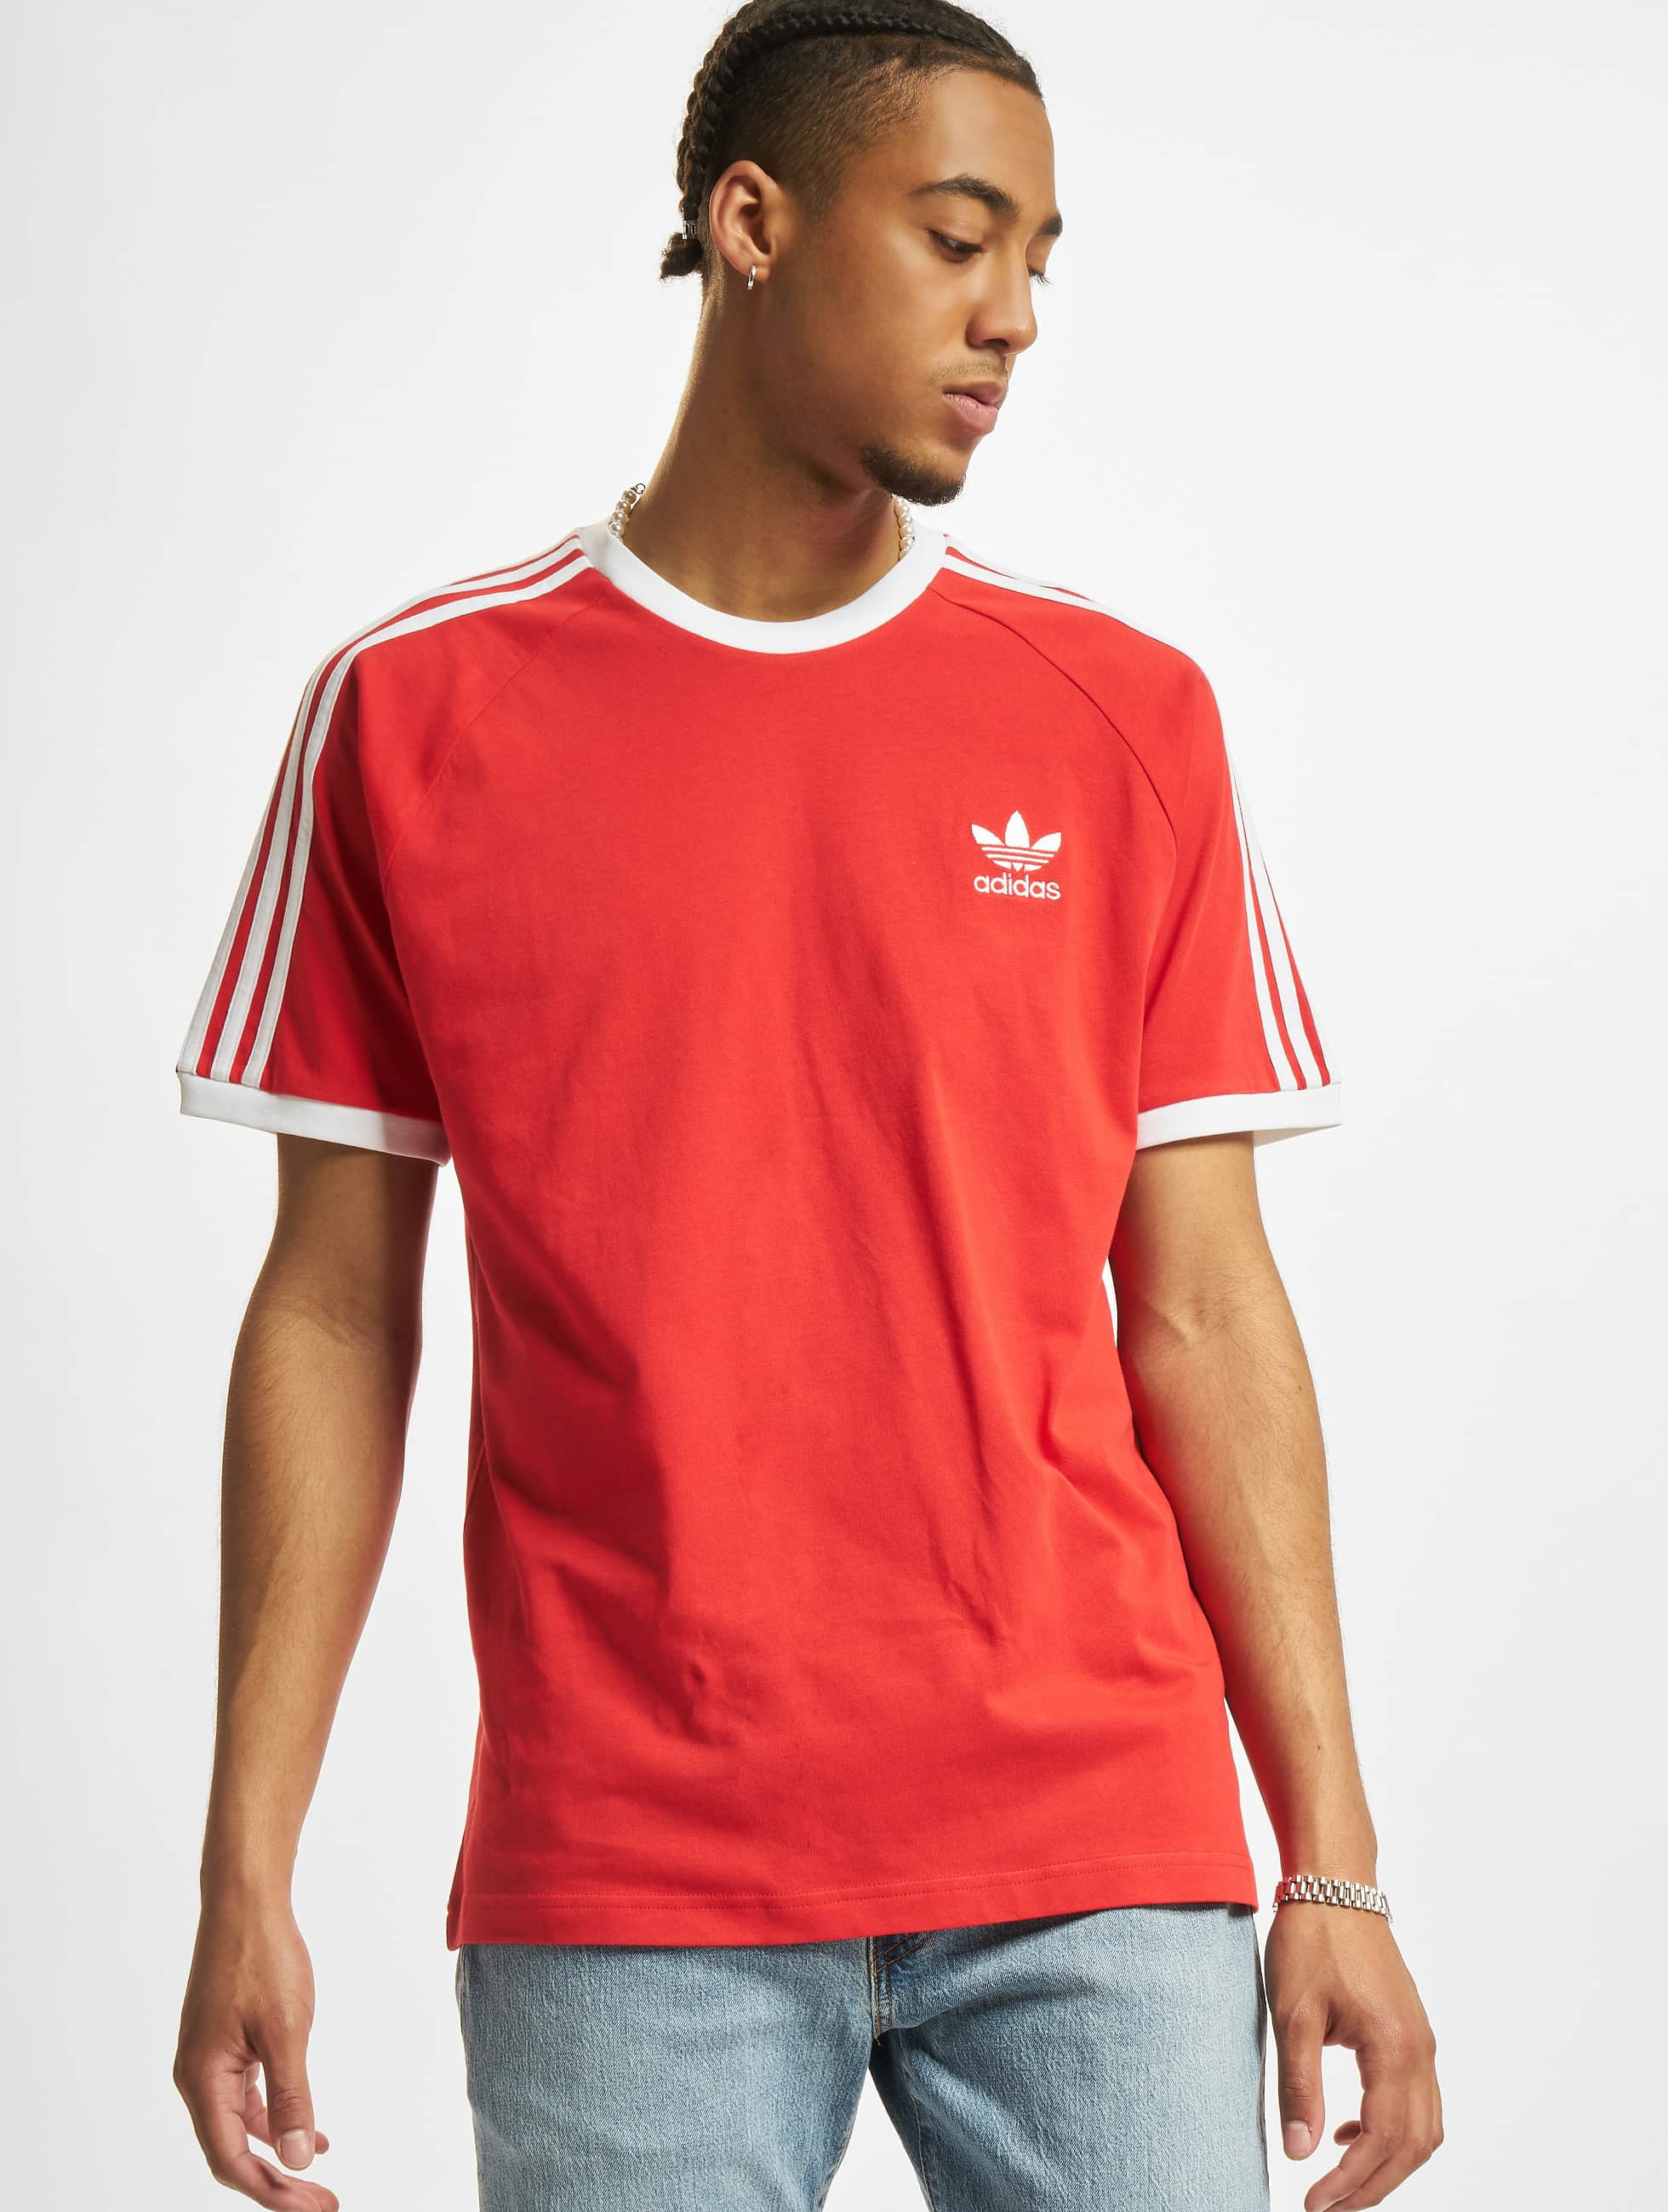 adidas bovenstuk / t-shirt in rood 871509